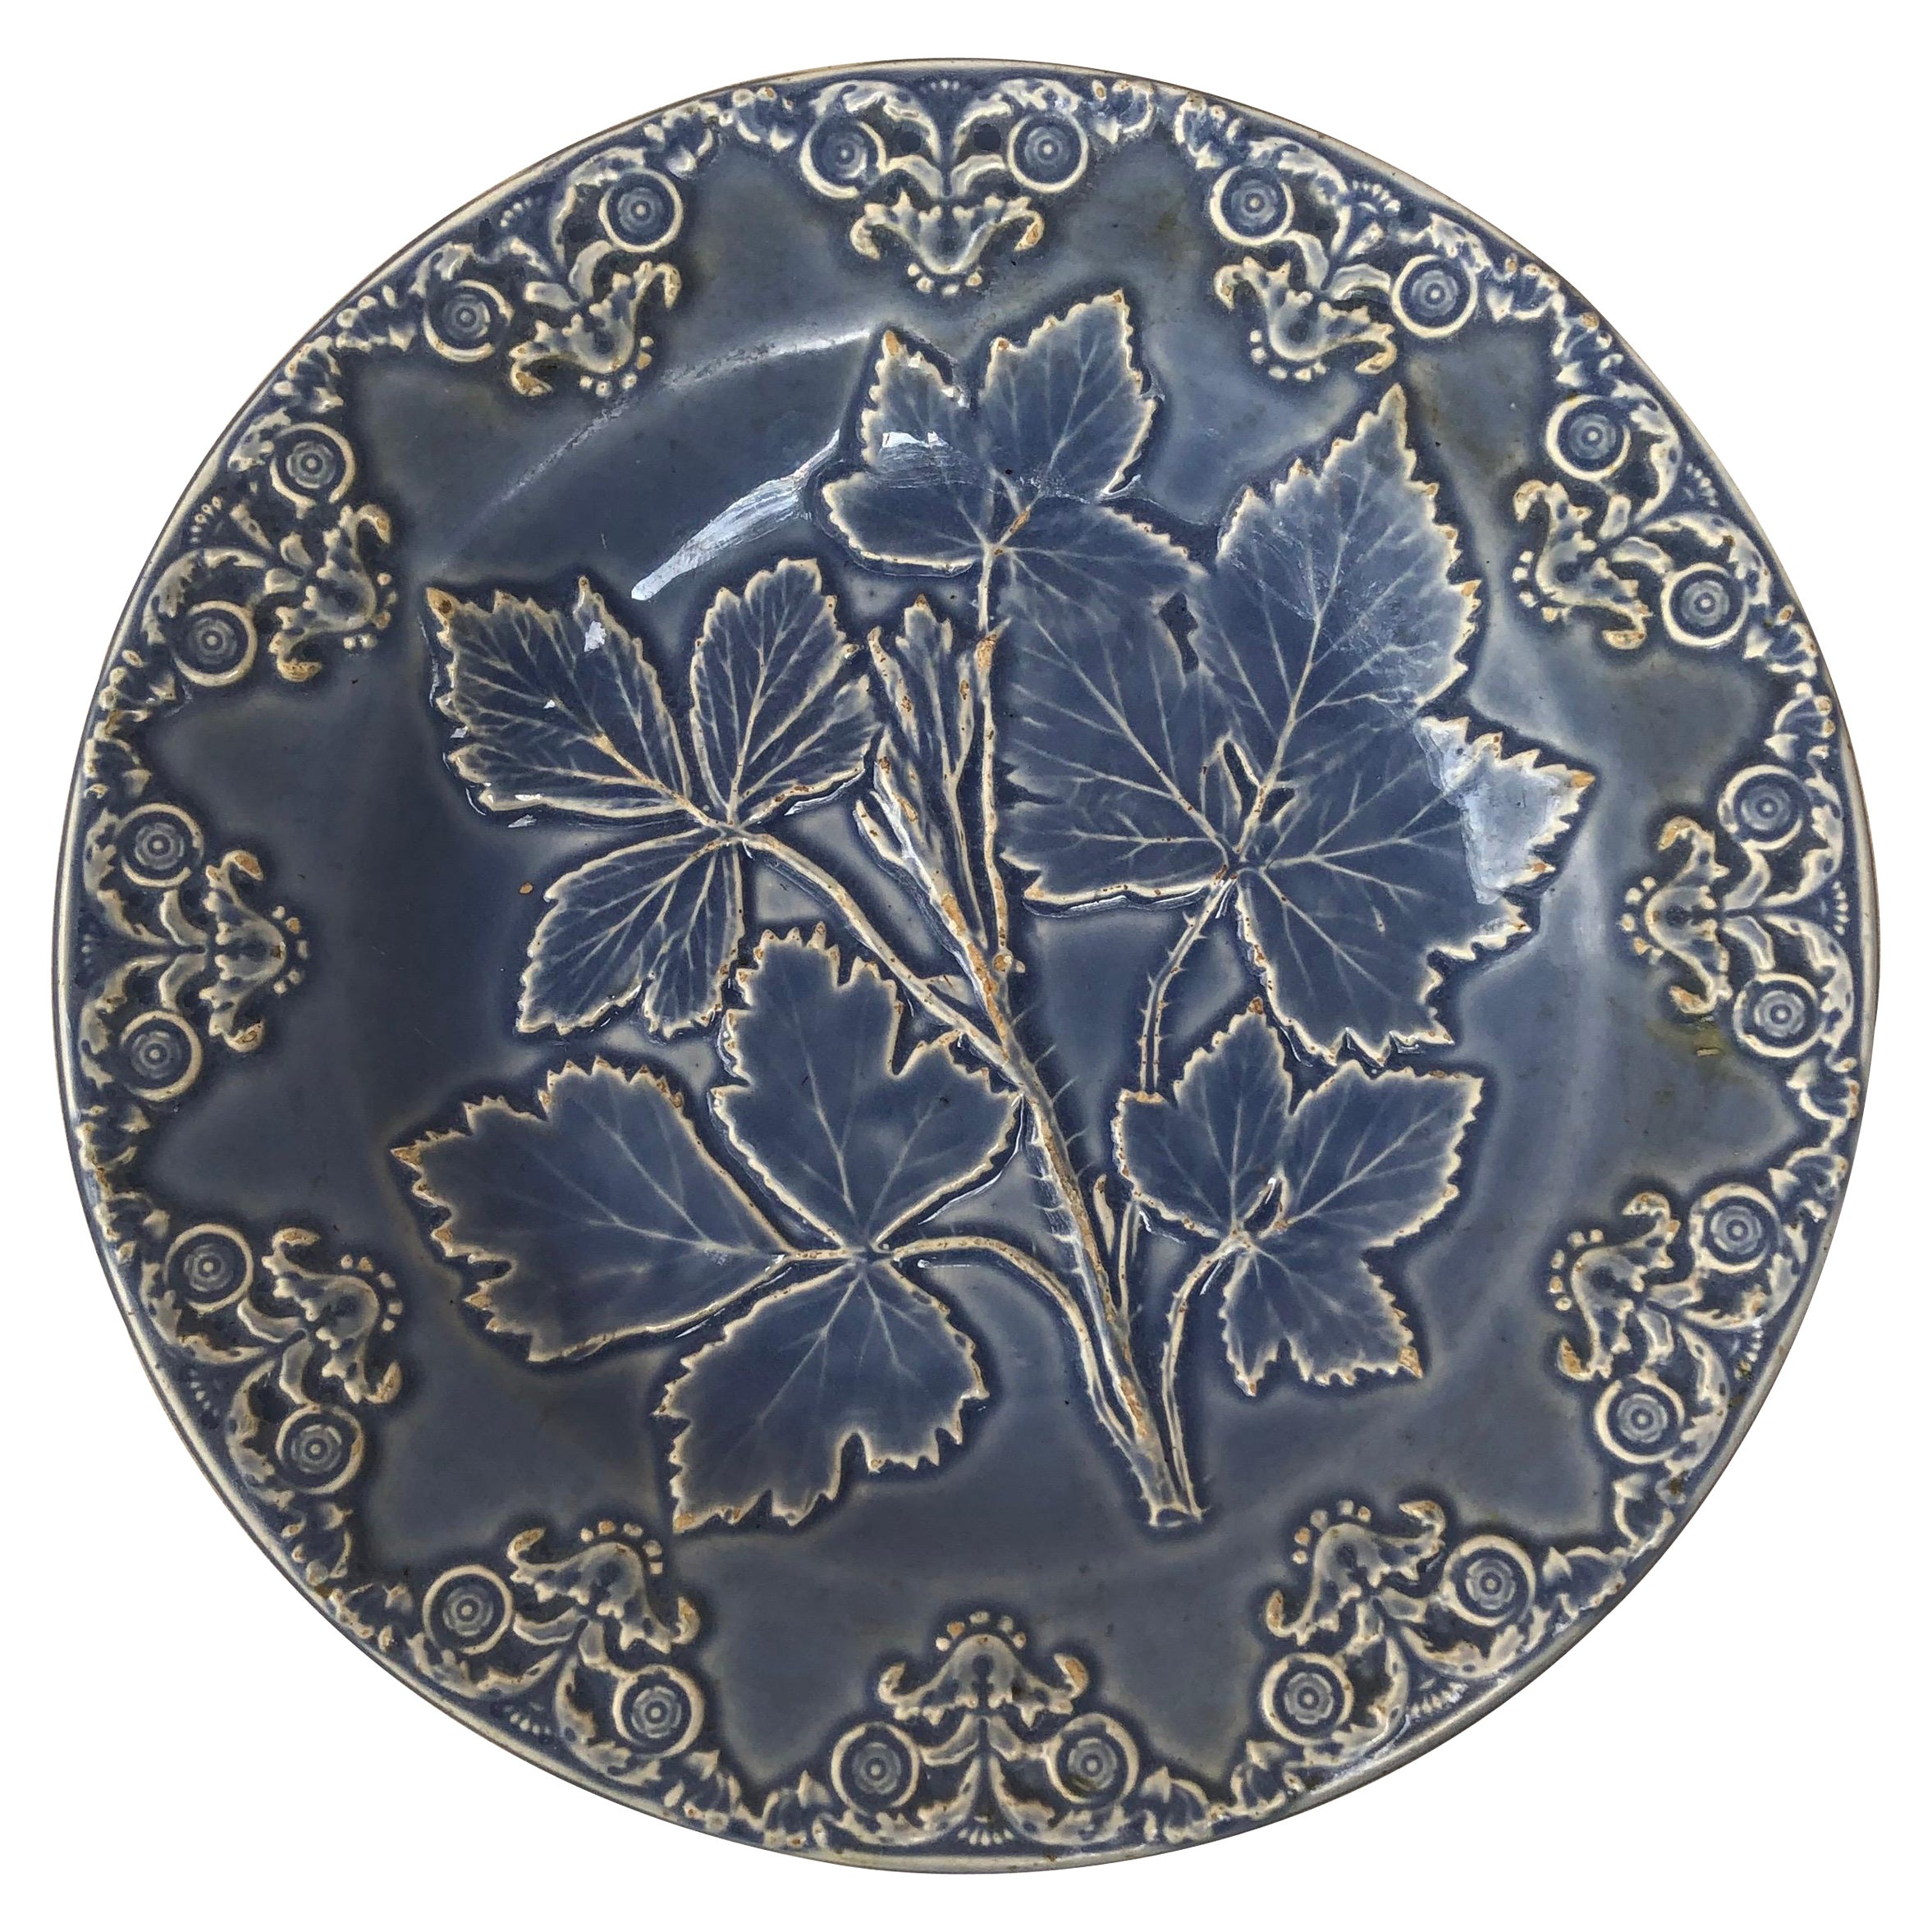 Assiette à feuilles bleues en majolique anglaise du 19ème siècle